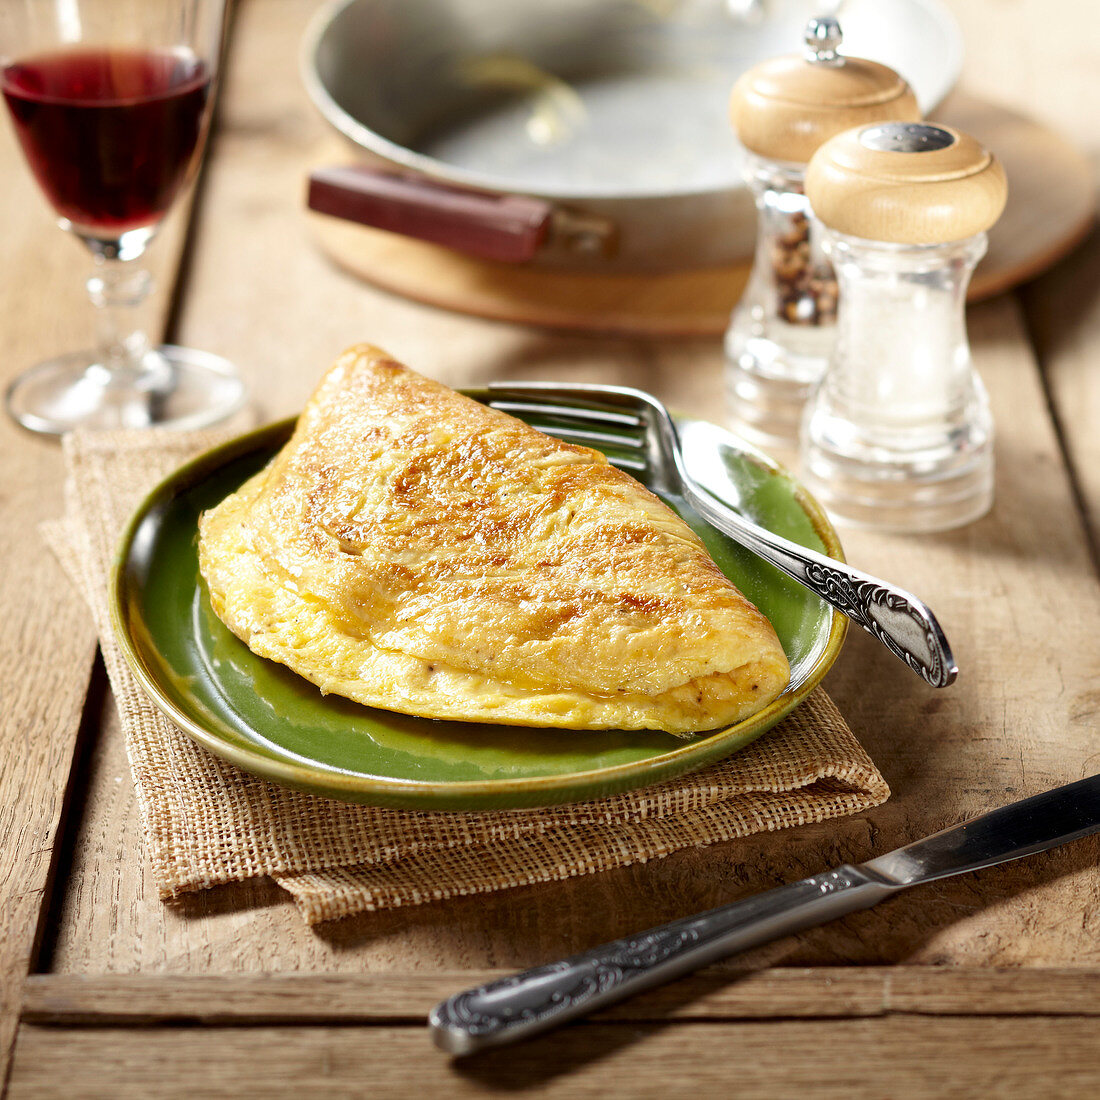 Plain folded omelette